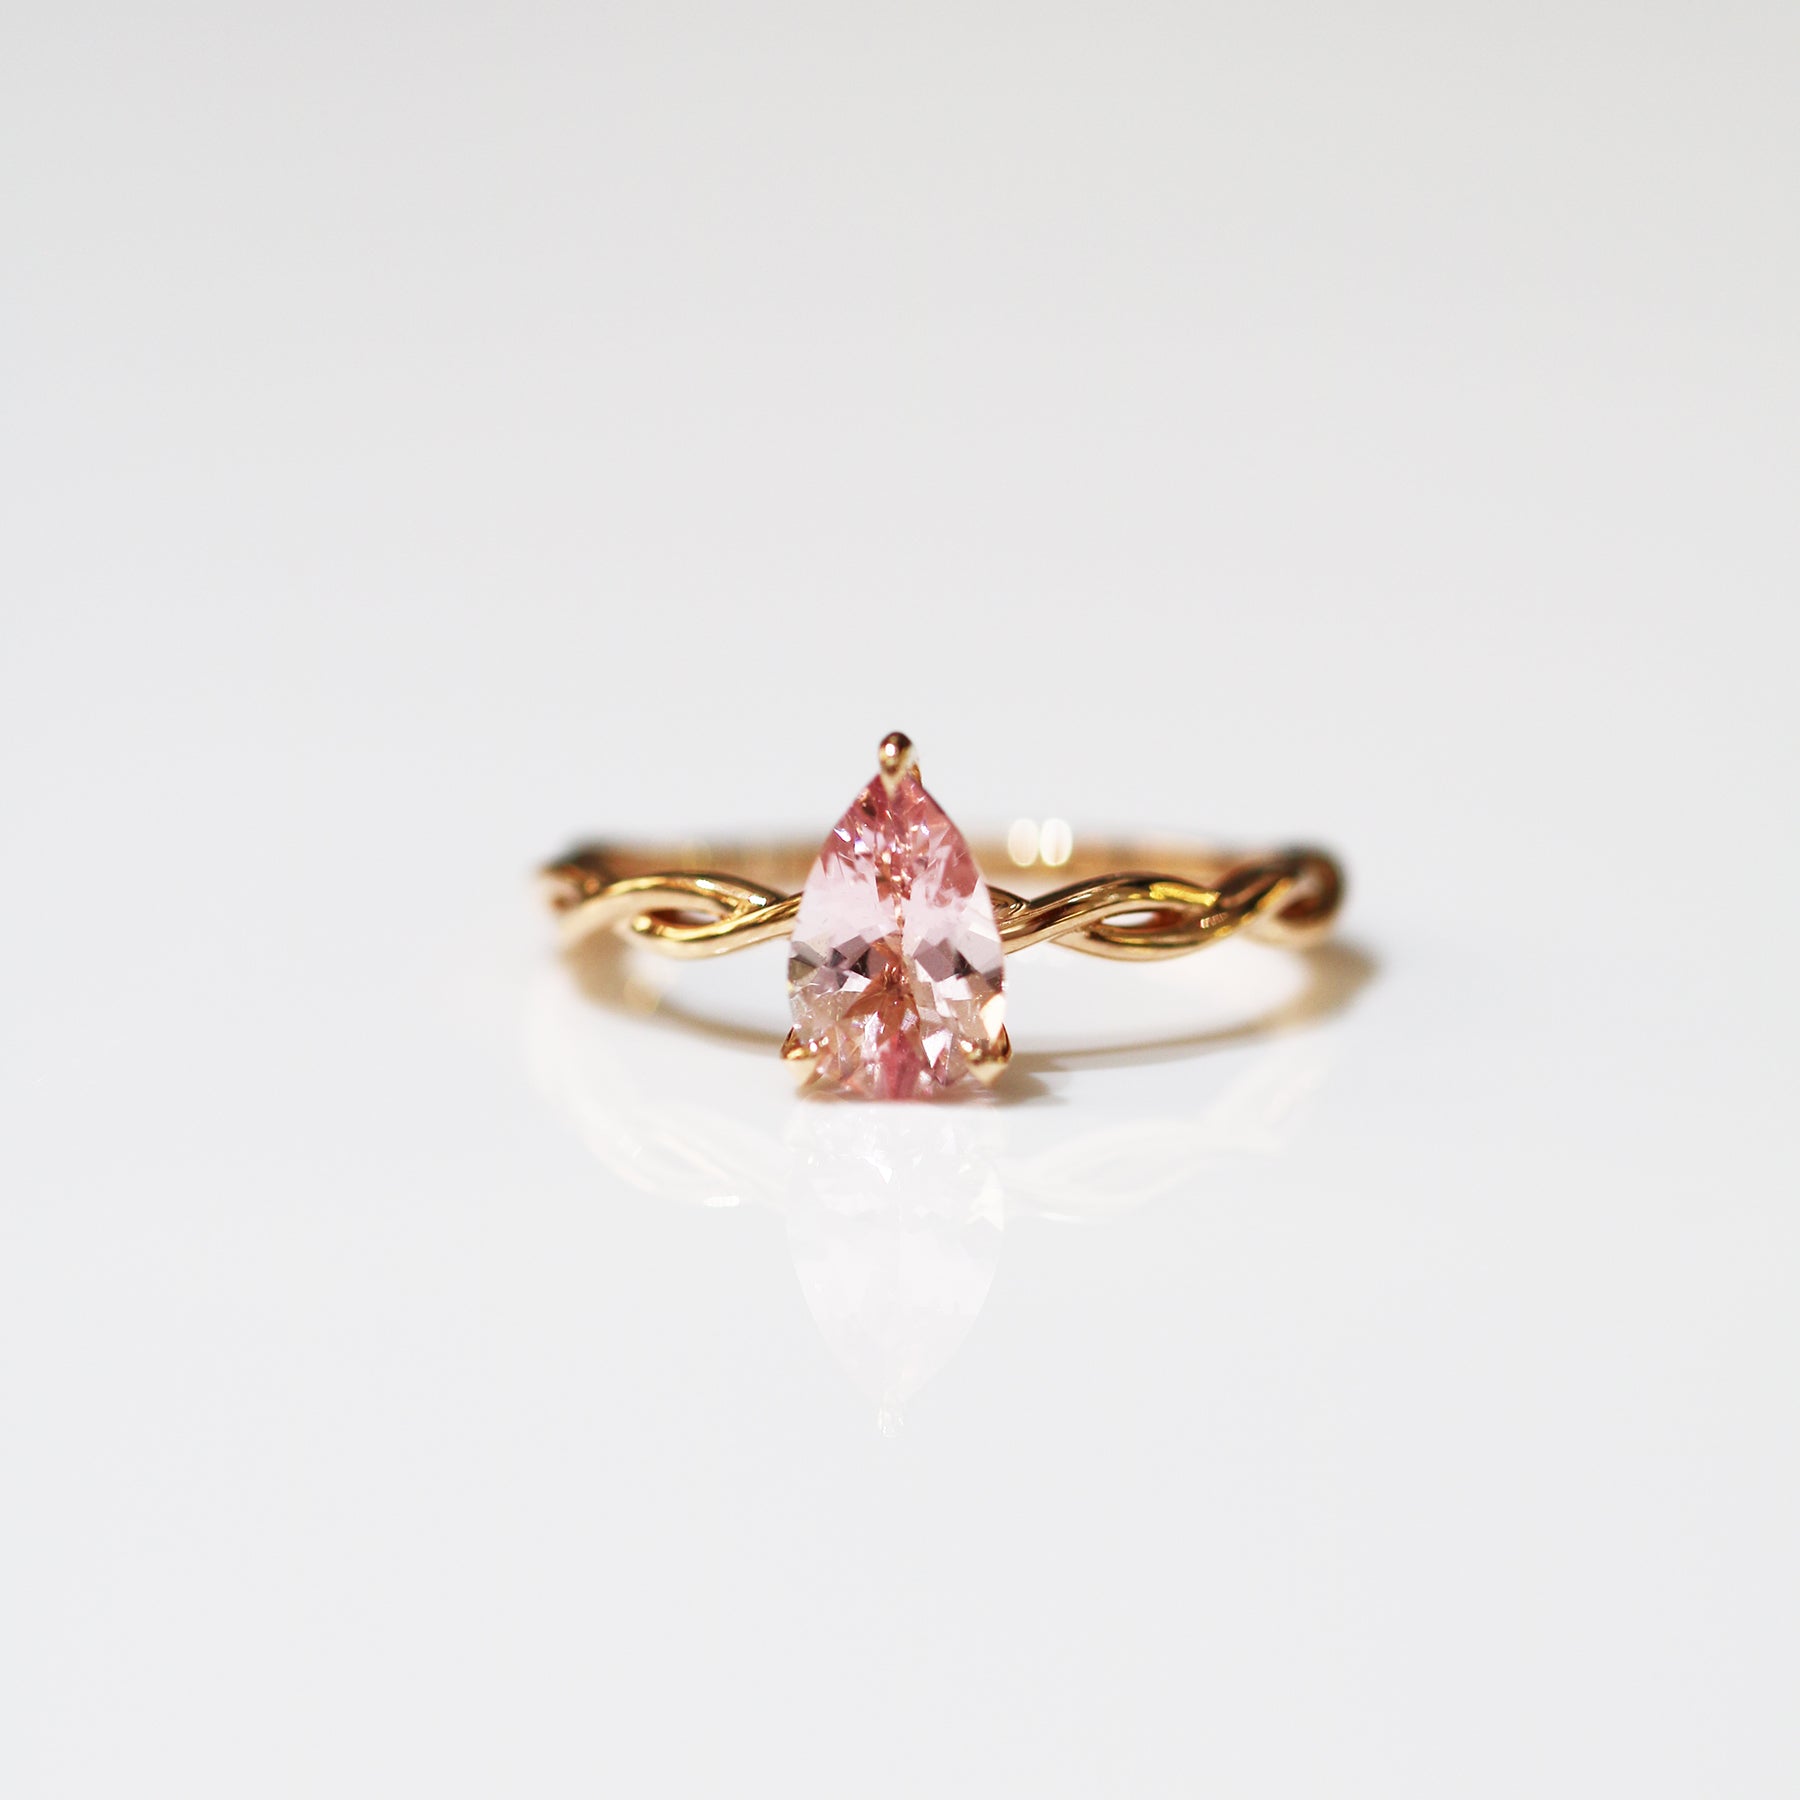 18k玫瑰金水滴形粉紅摩根石鑽石戒指側面 18k Rose Gold Pear-shaped Morganite Diamond Ring on side view